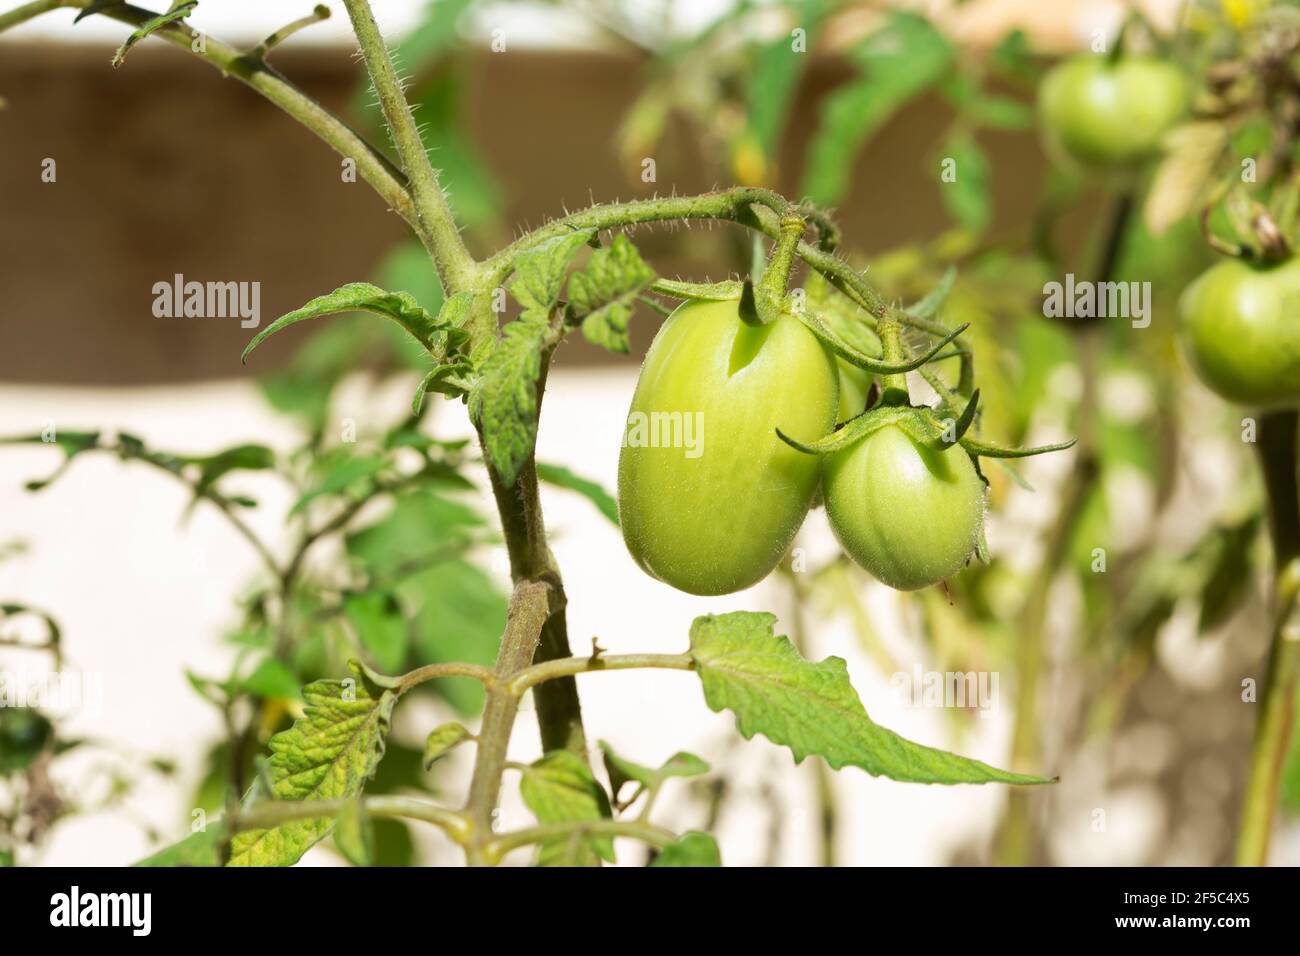 fresh growing tomatoes (Solanum lycopersicum) Stock Photo